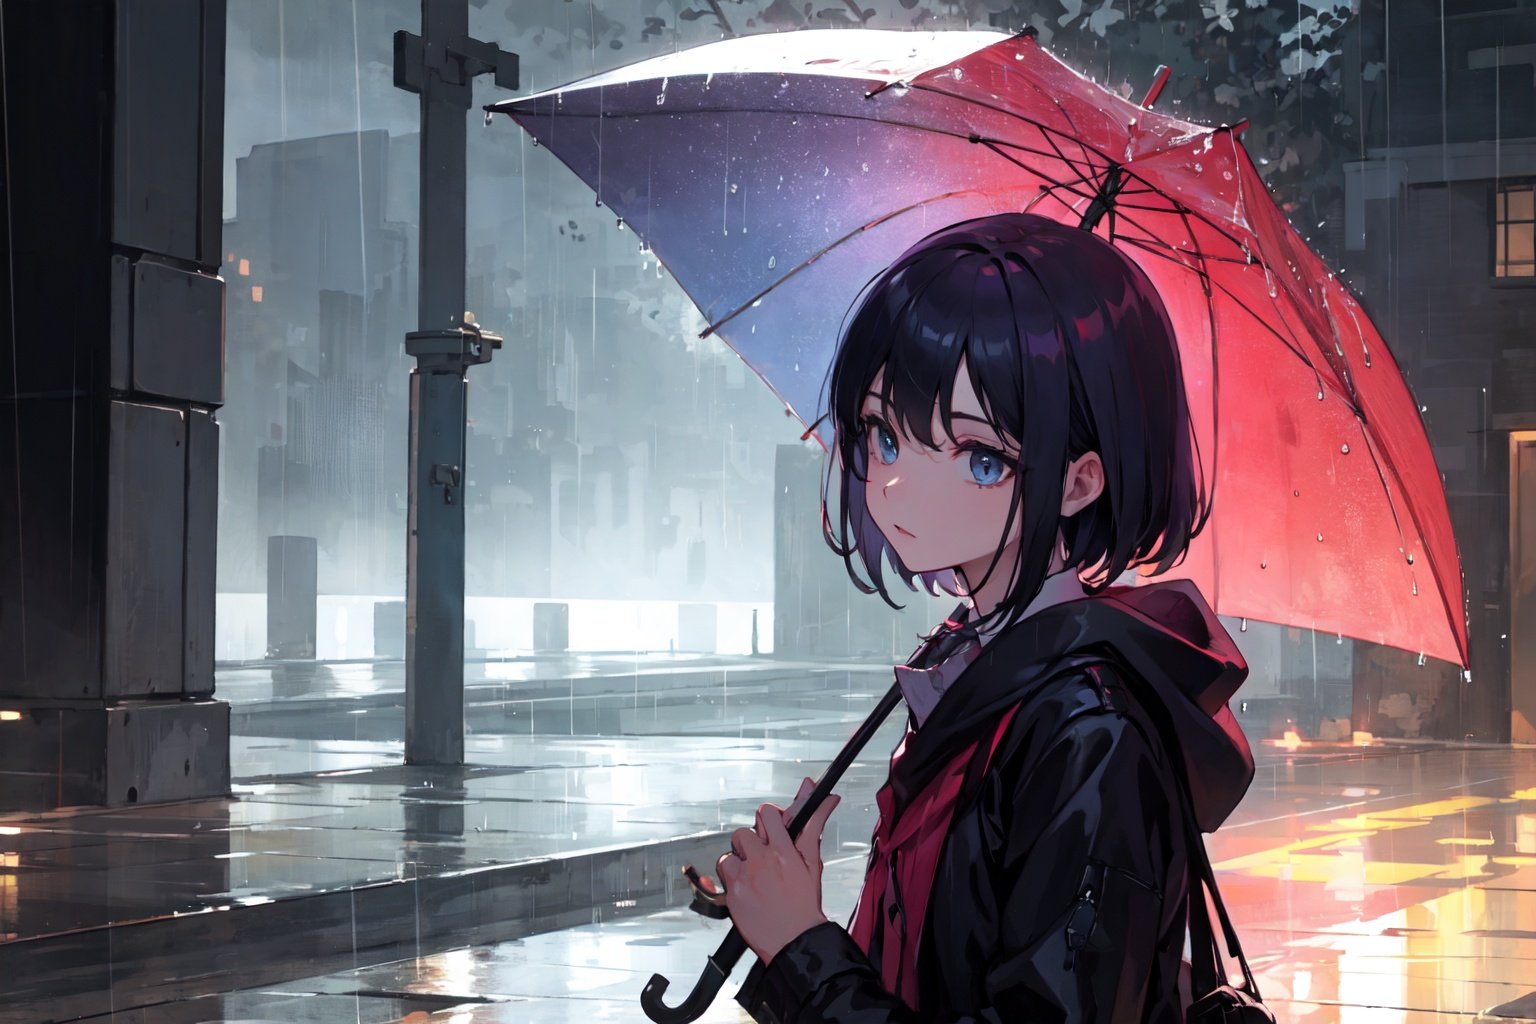 rain,holding umbrella,